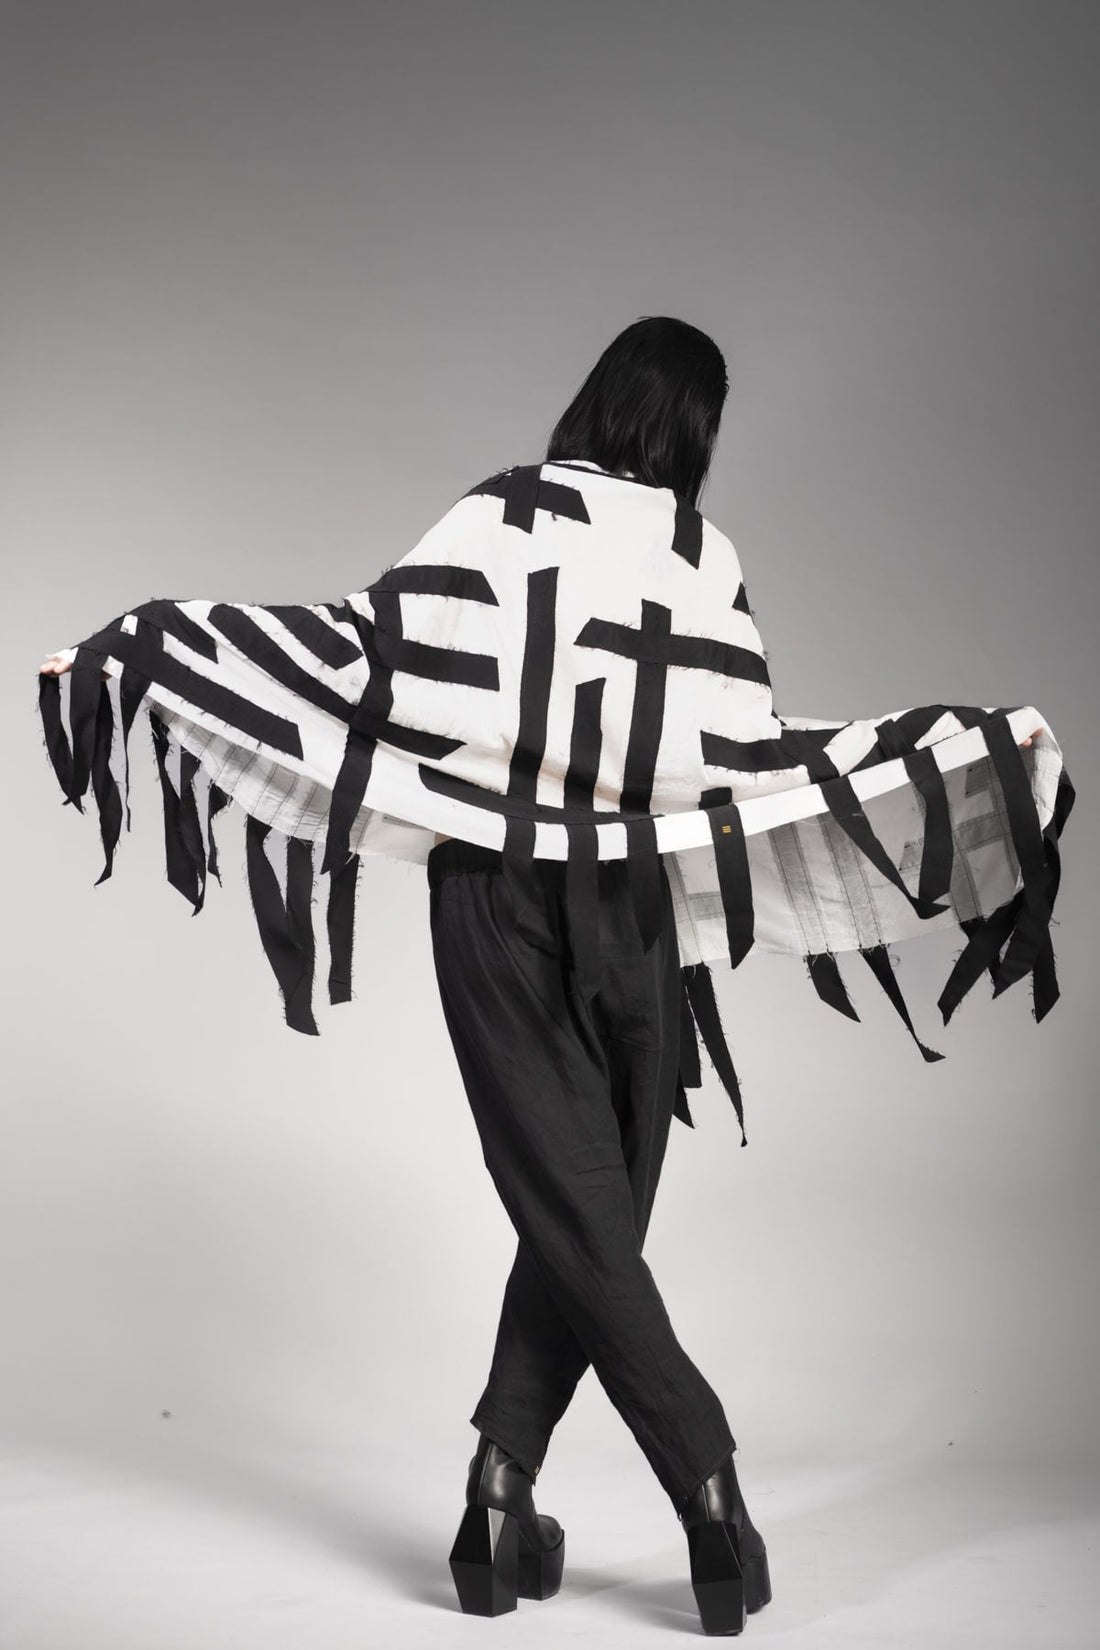 eigensinnig wien | Seattle | Extravaganter, großer Designer Schal im eleganten Grunge Style